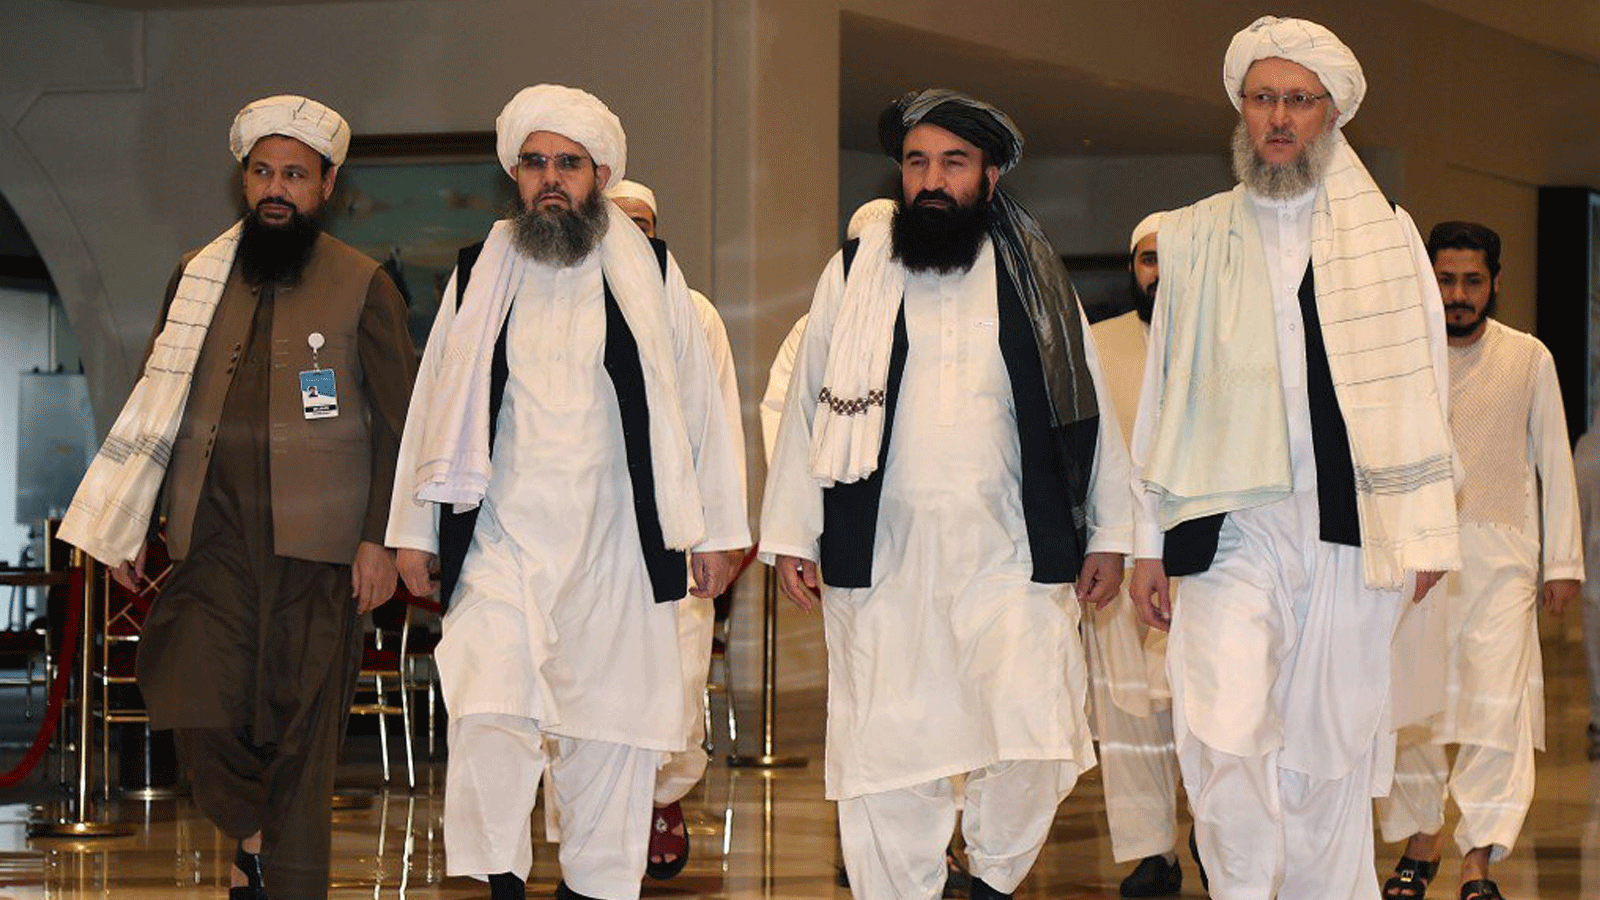 مفاوضو طالبان يسيرون في بهو الفندق خلال المحادثات في العاصمة القطرية الدوحة في 12 أغسطس 2021